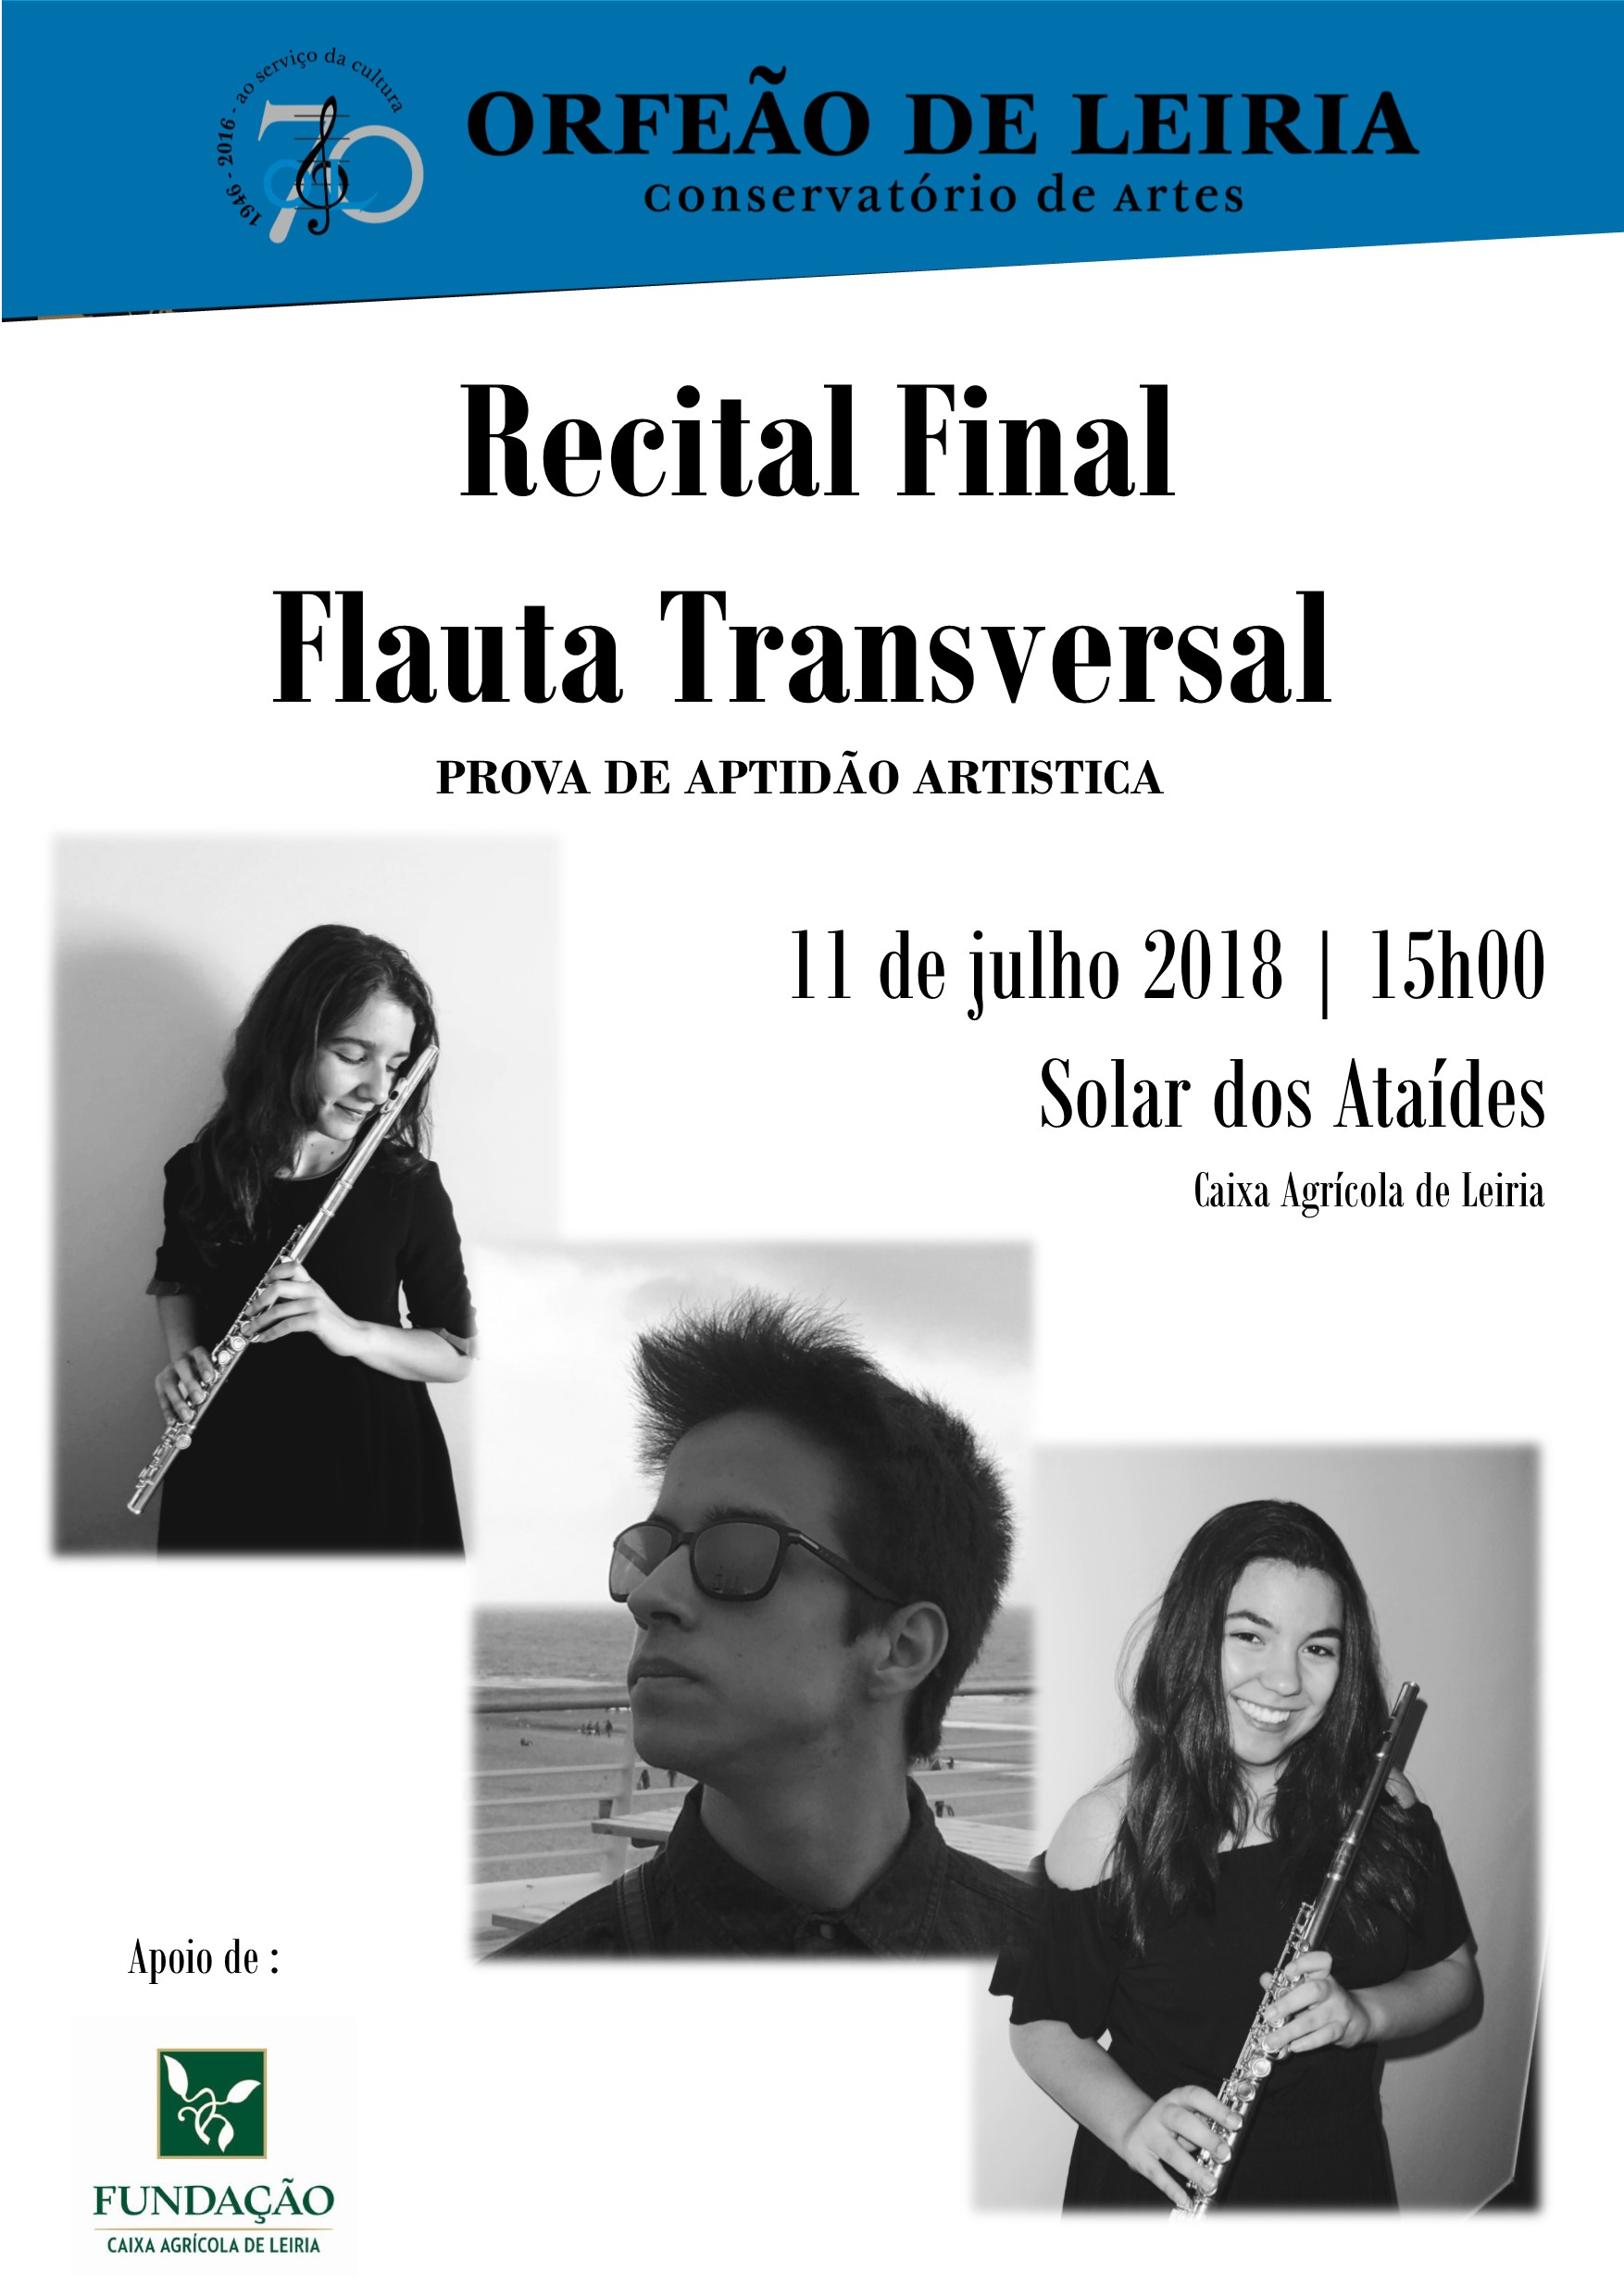 Recital Final de Flauta Transversal